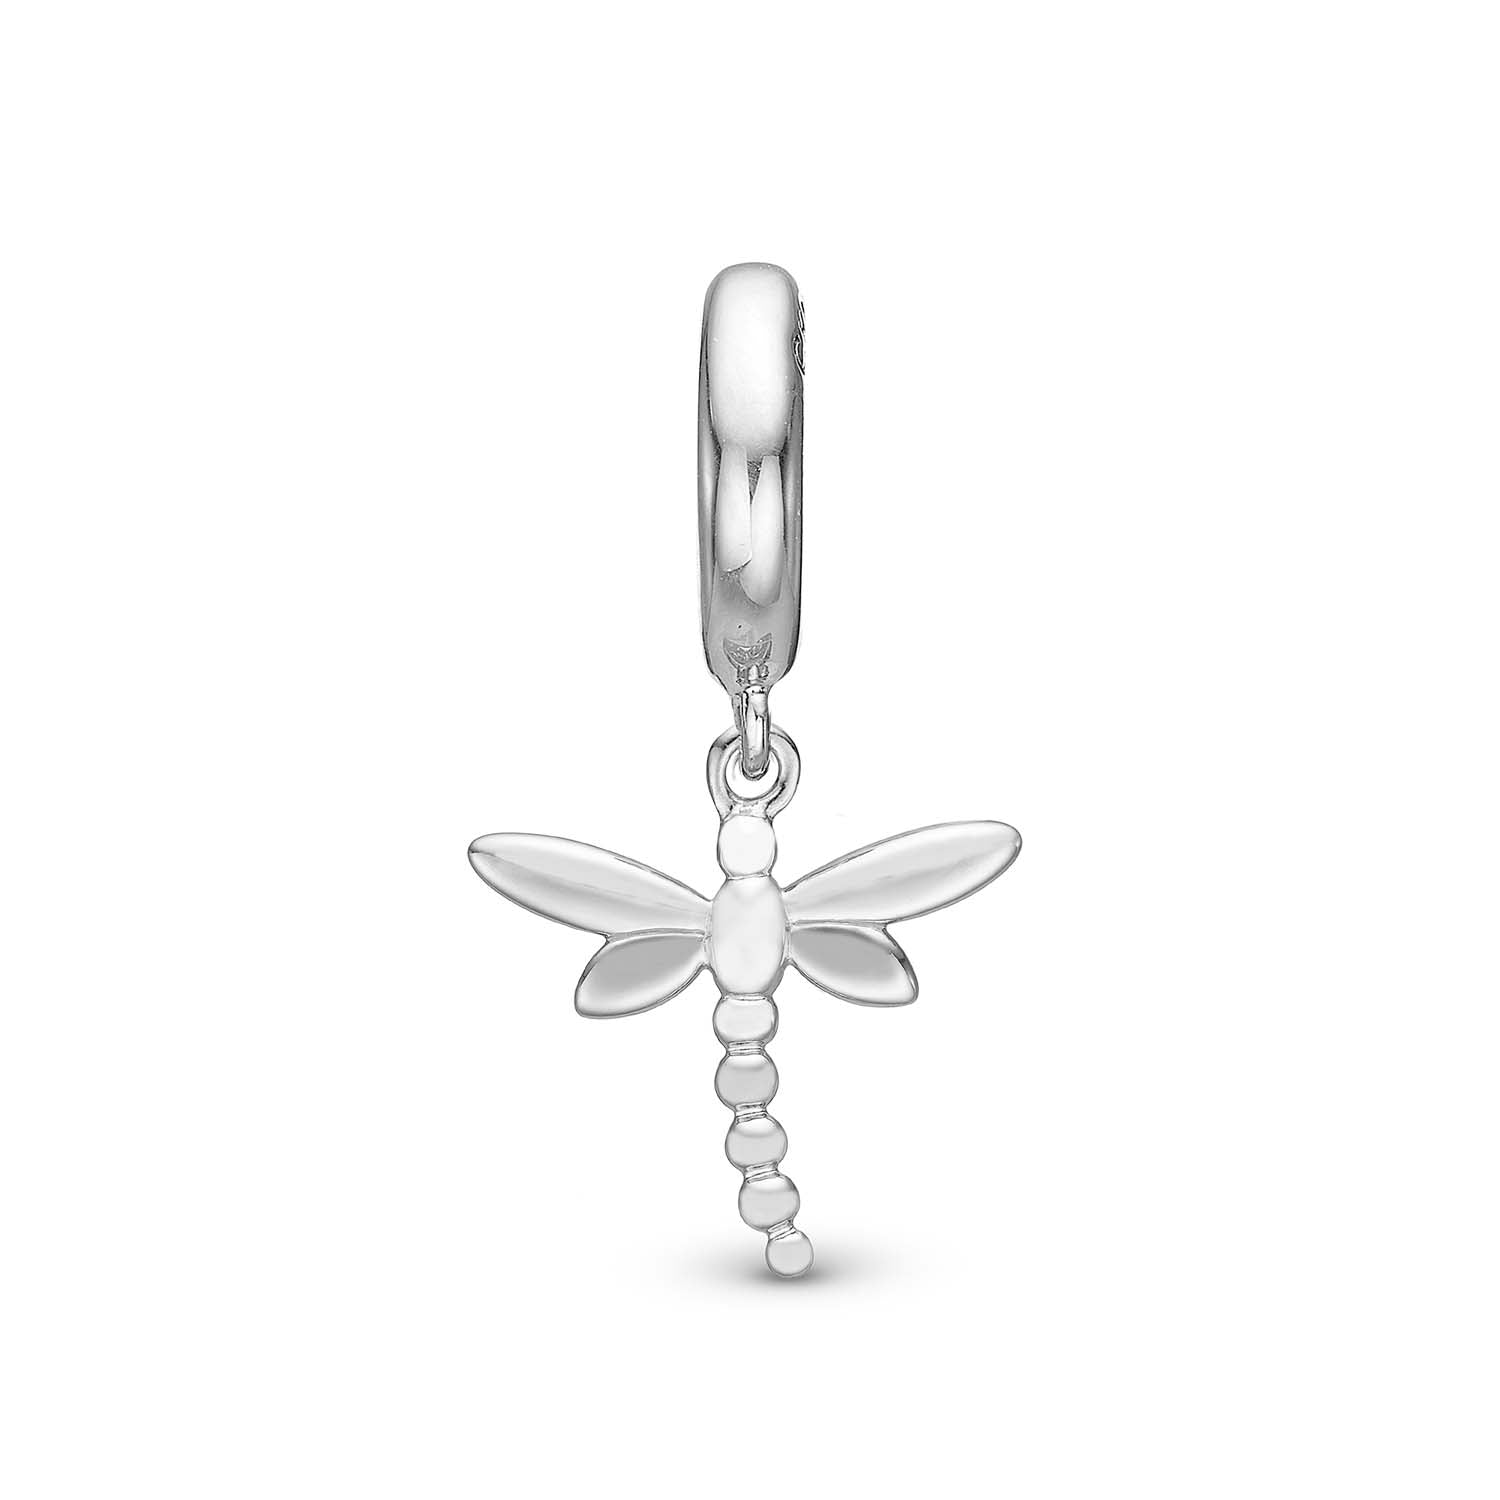 Billede af Christina Design London Jewelry & Watches - Dragonfly charm, 6 mm Sterlingsølv